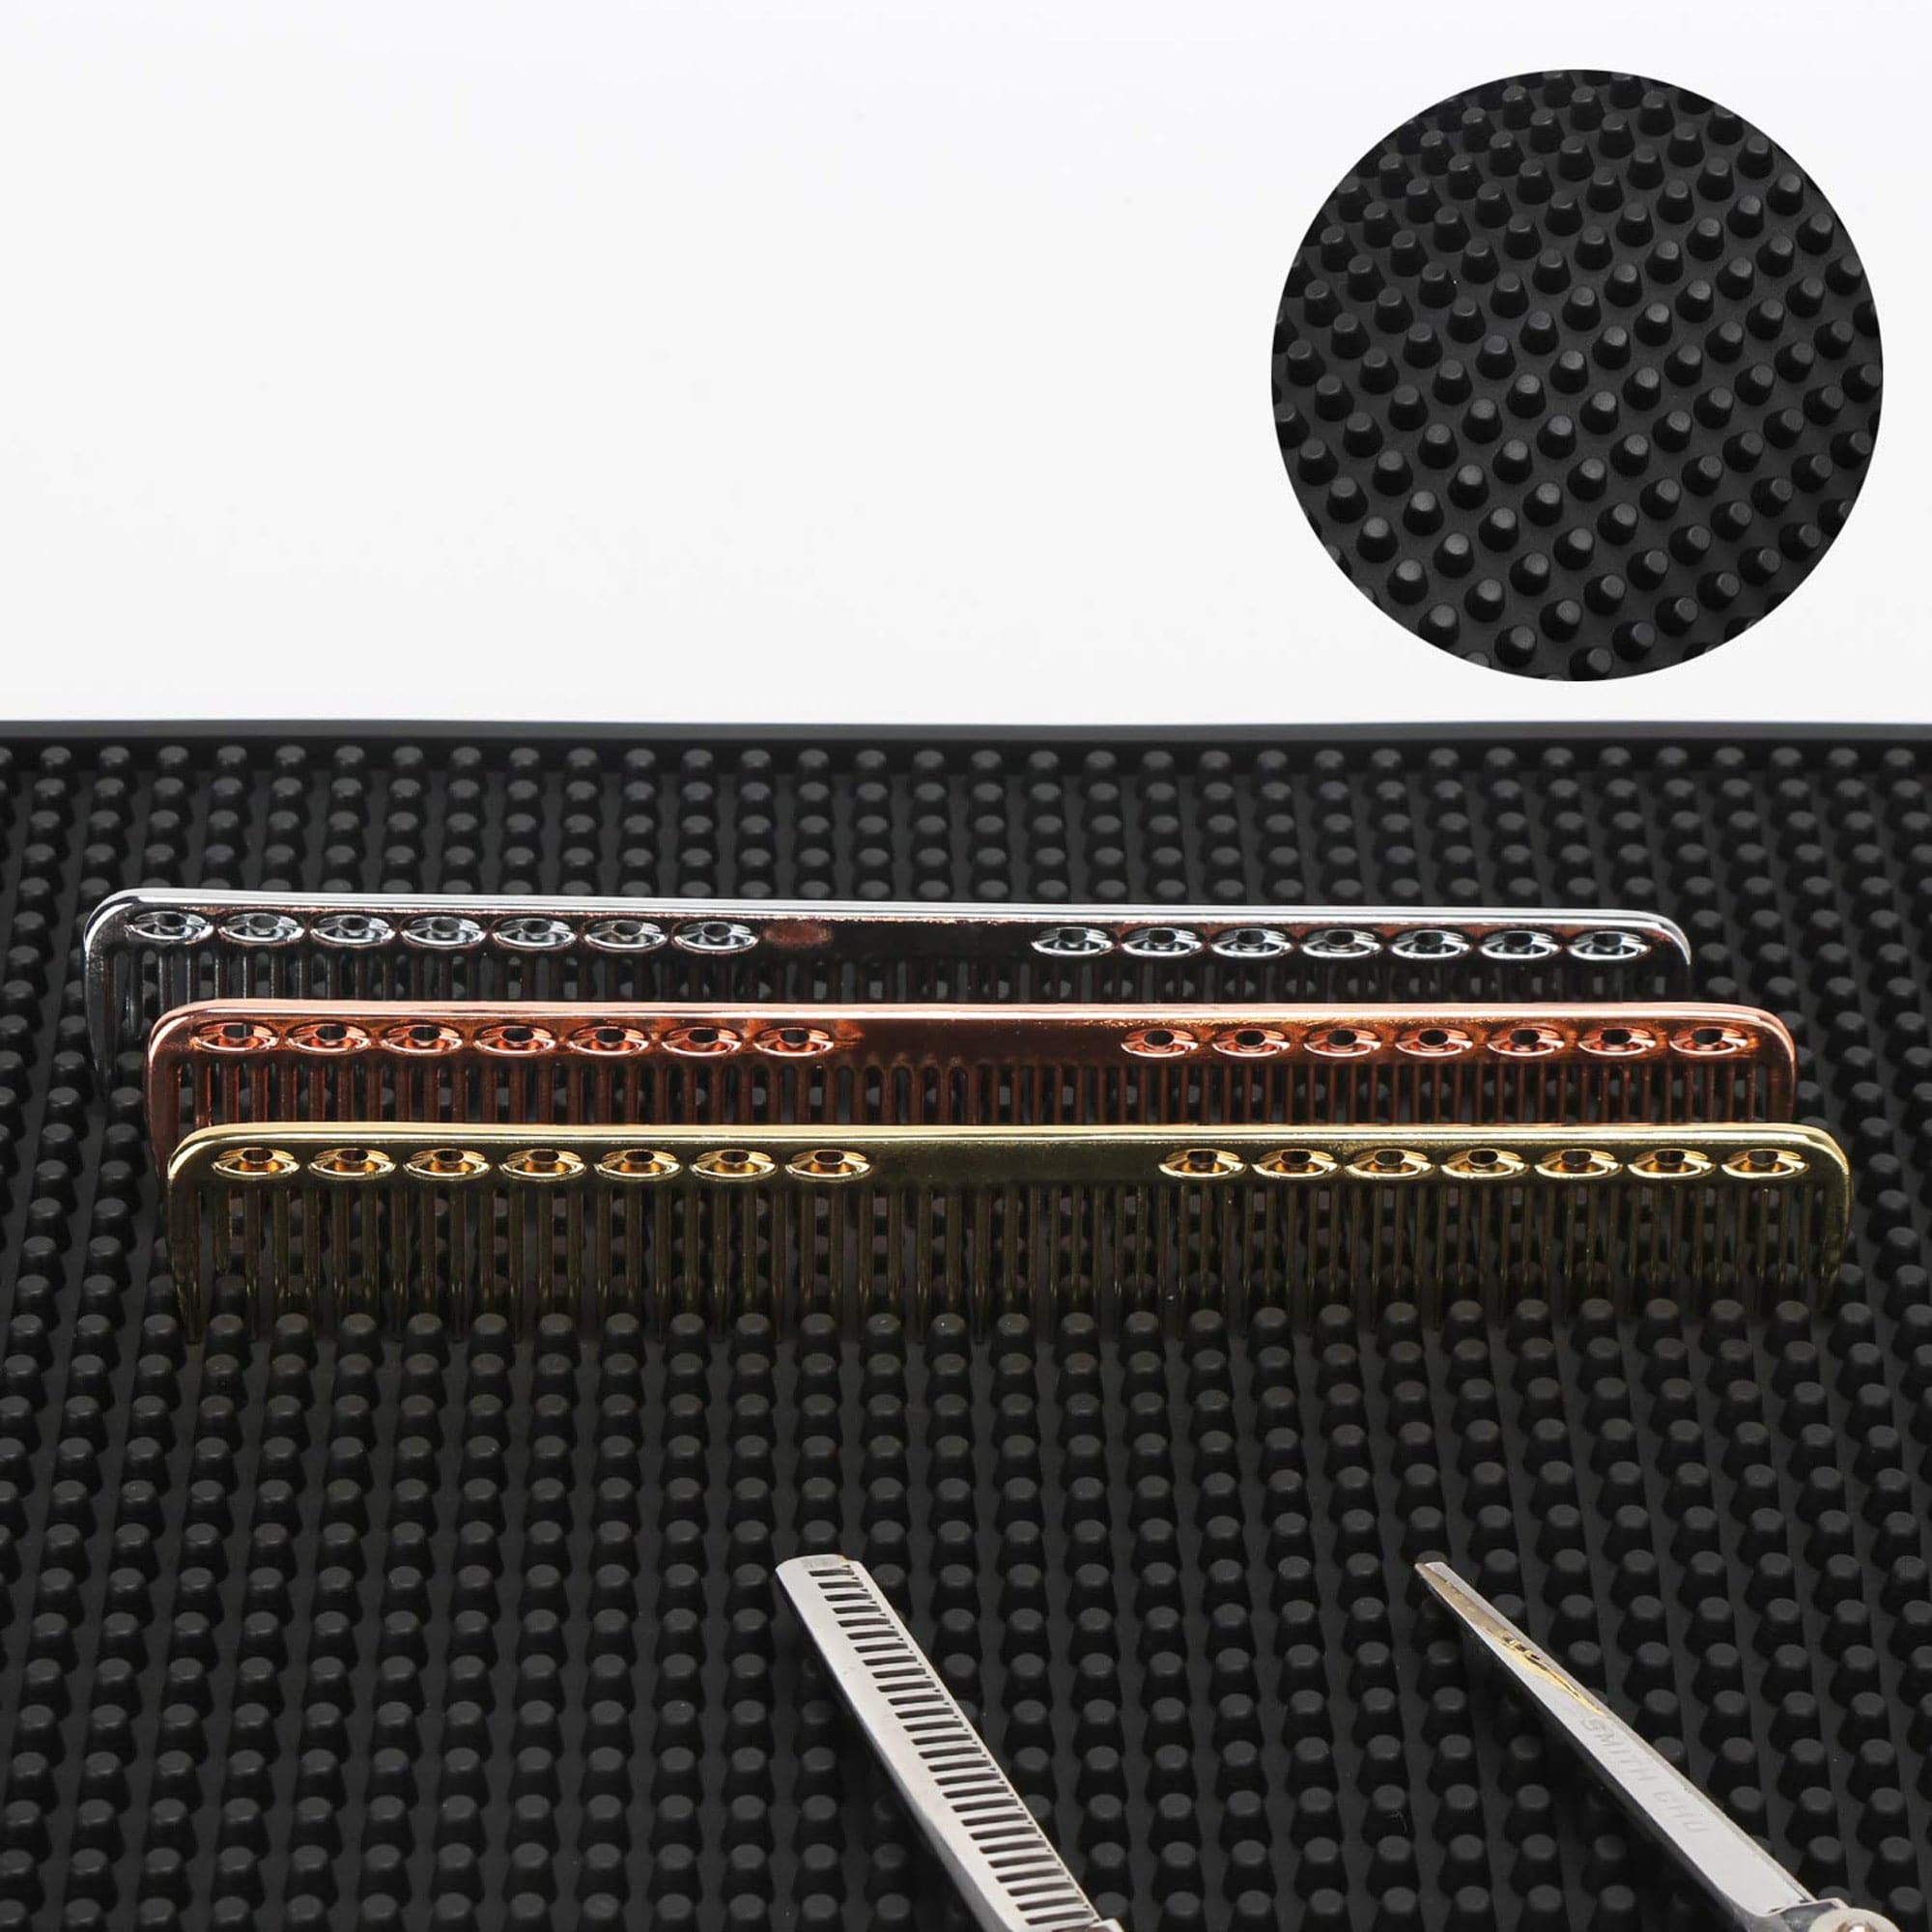 Eson - Barber Tool Mat Station Organiser Mat Flexible Rubber & Anti-Slip 45x25cm